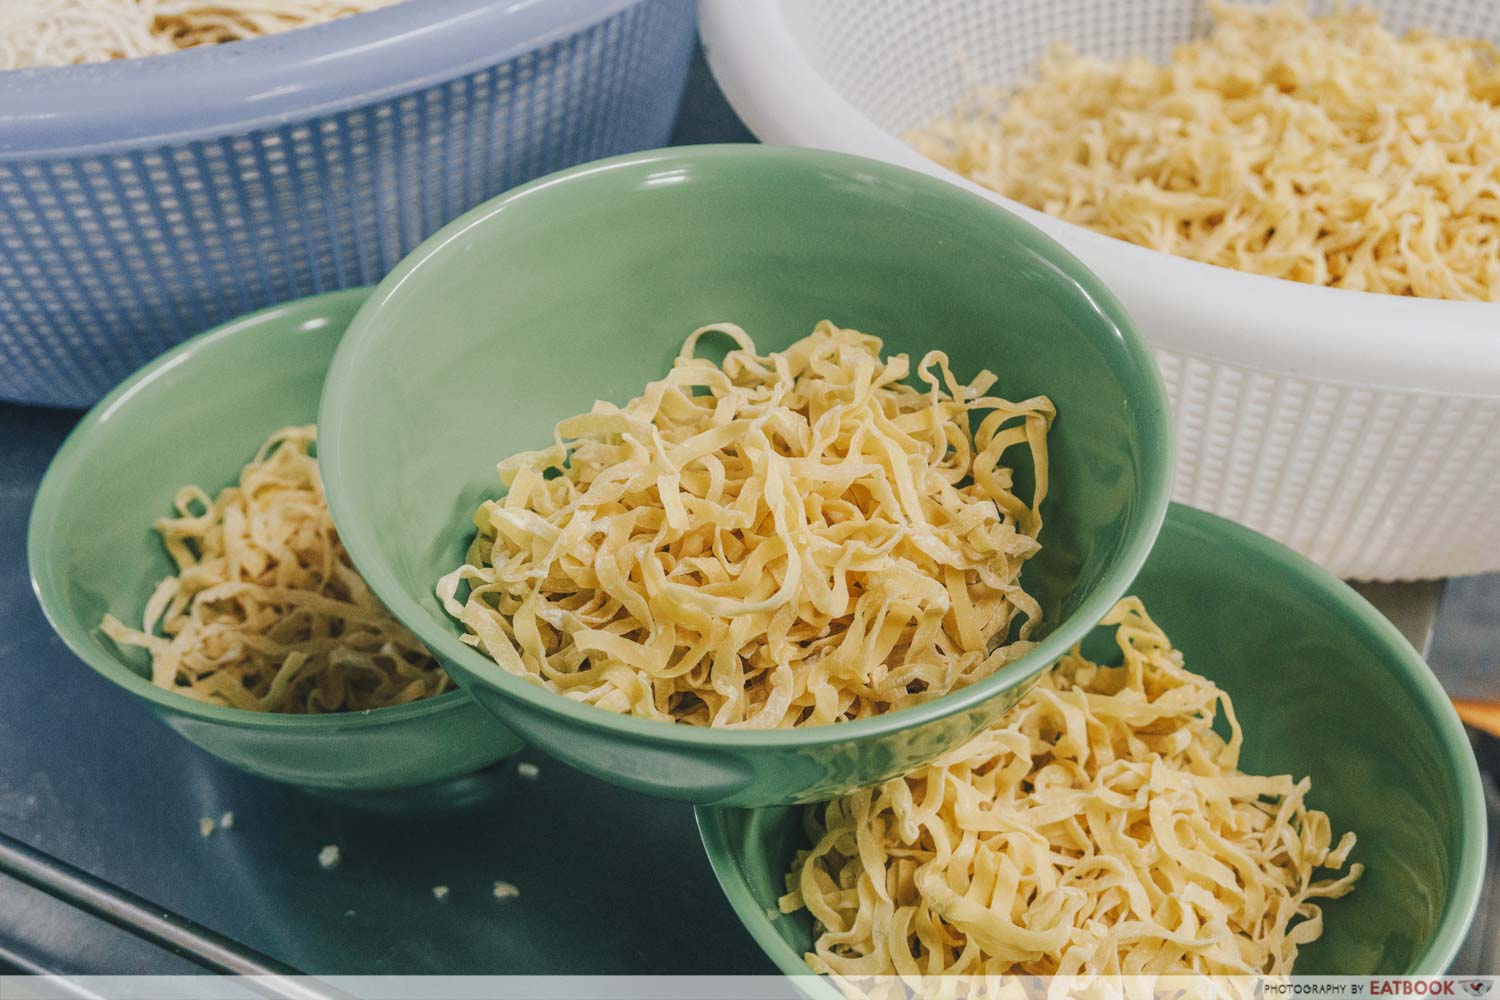 Soon Heng Pork Noodles - Noodle preparation